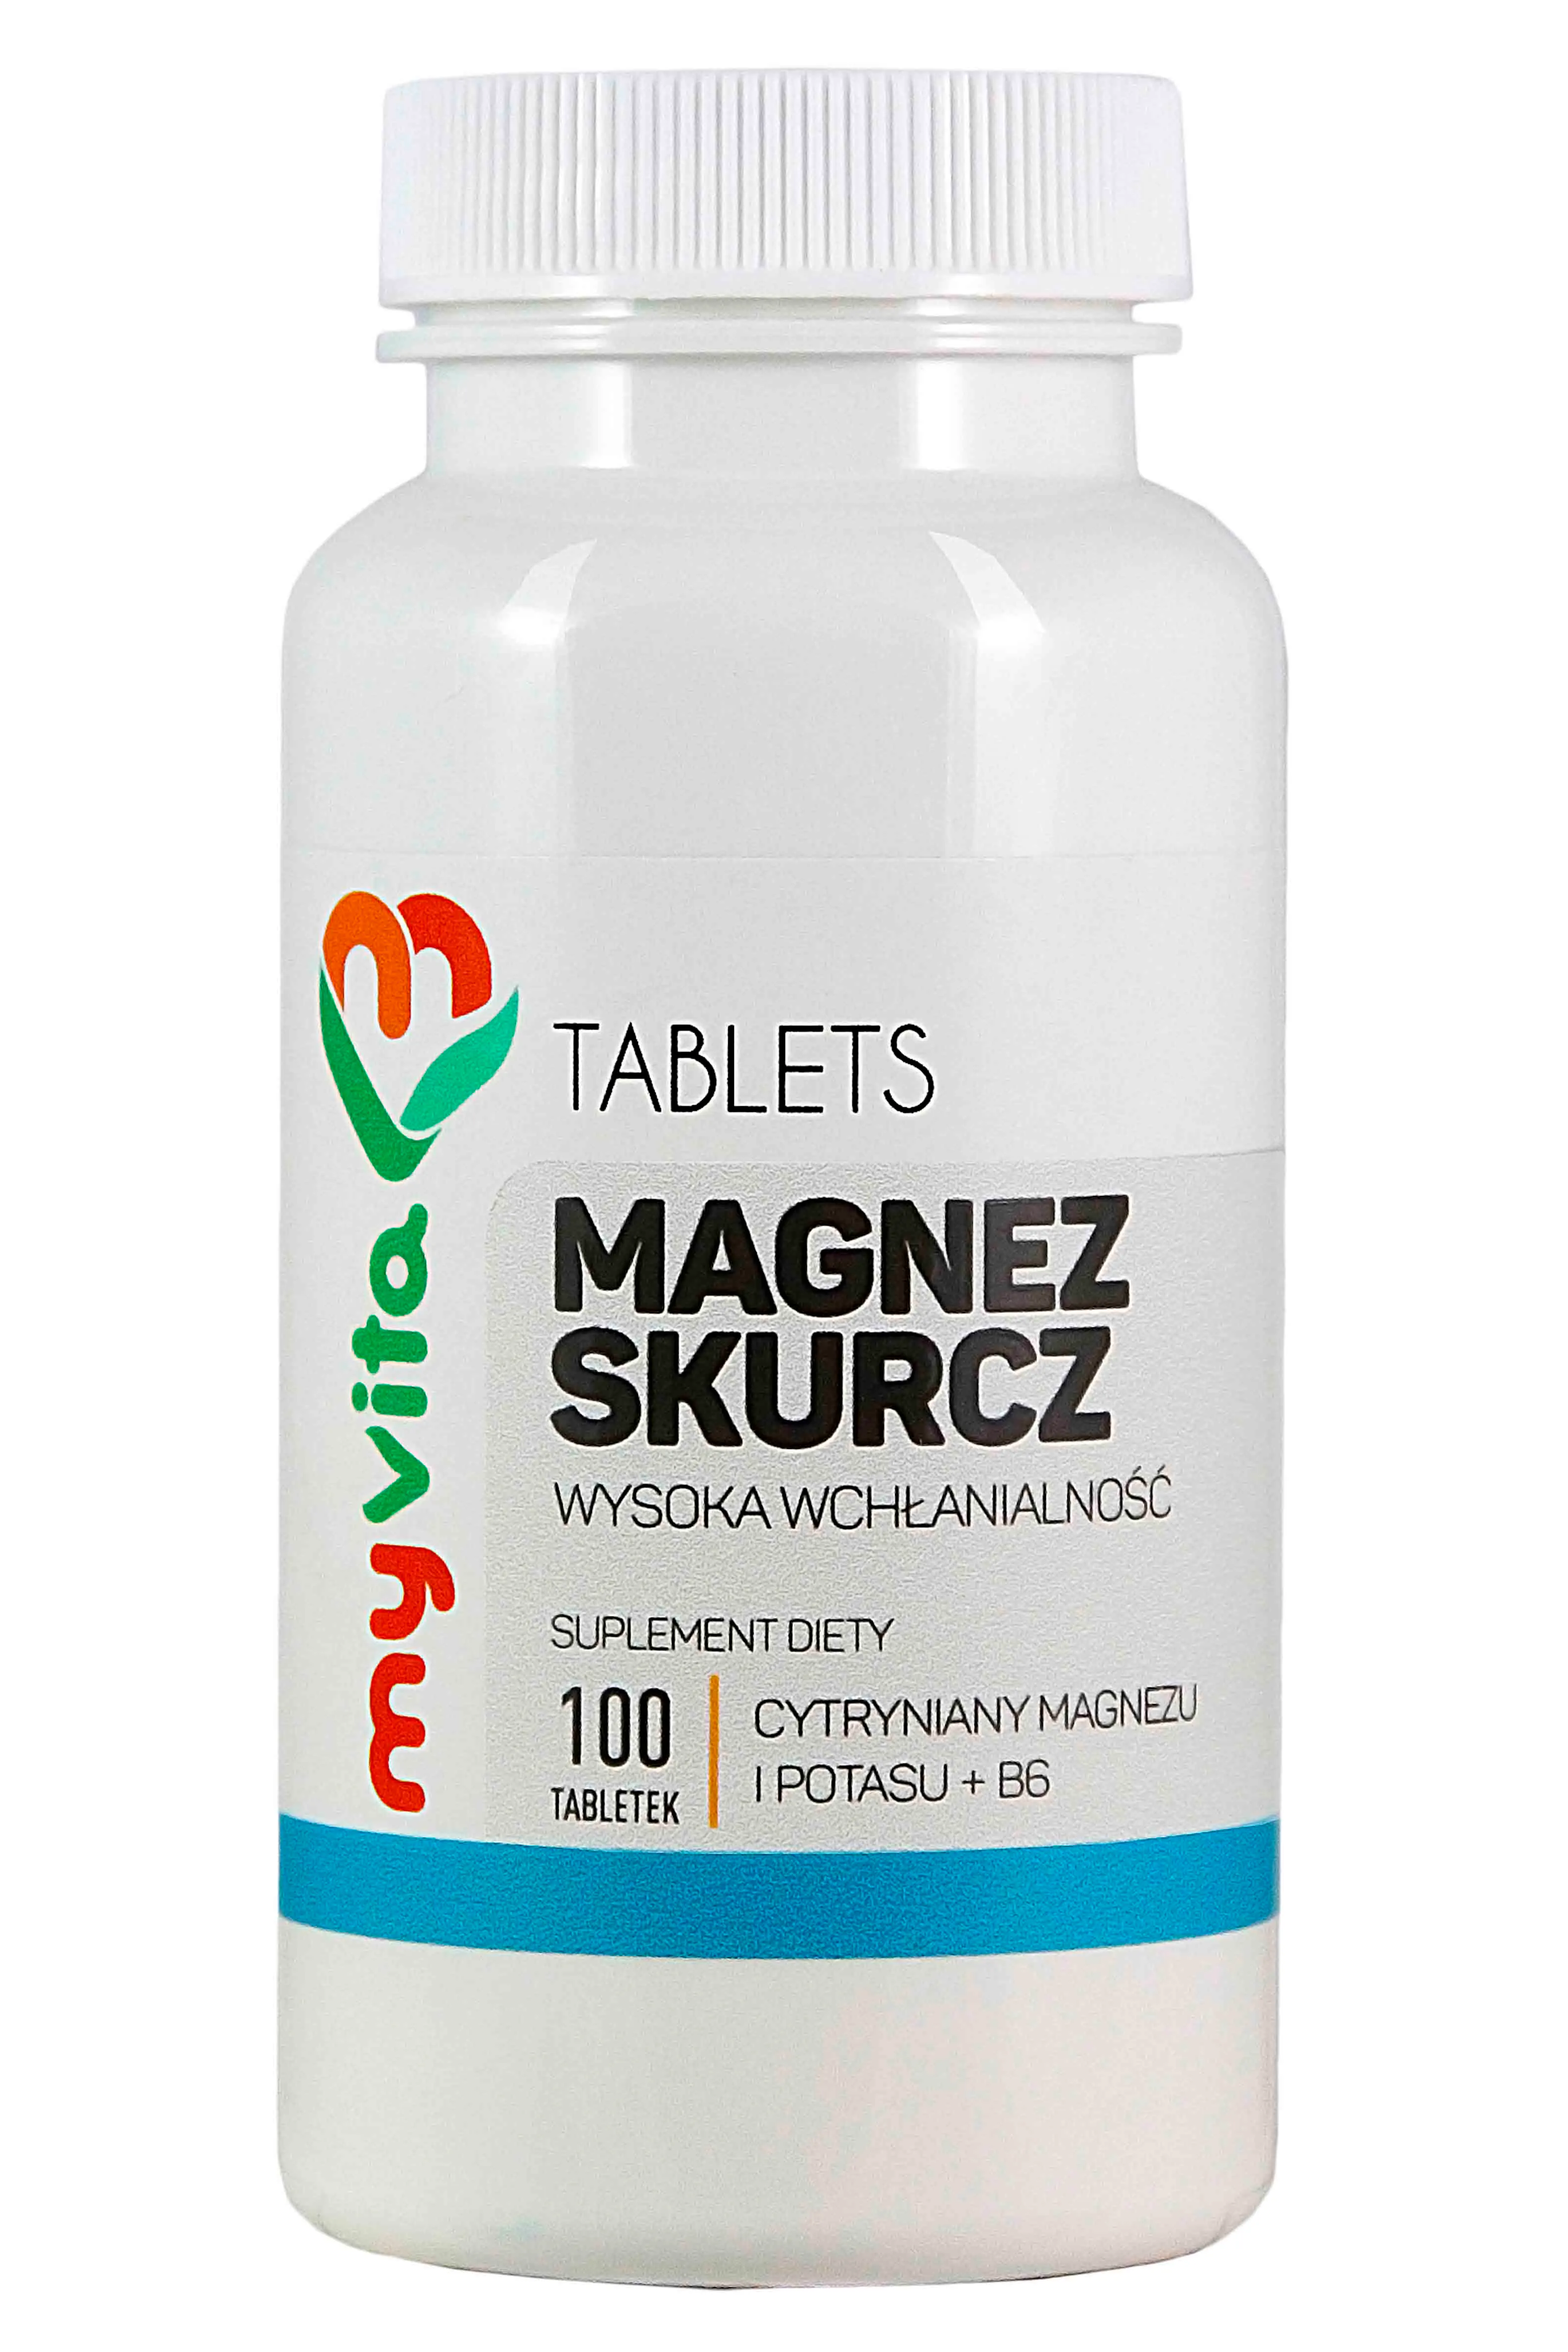 MyVita, Magnez skurcz (cytryniany magnezu + potas + witamina B6), suplement diety, 100 tabletek